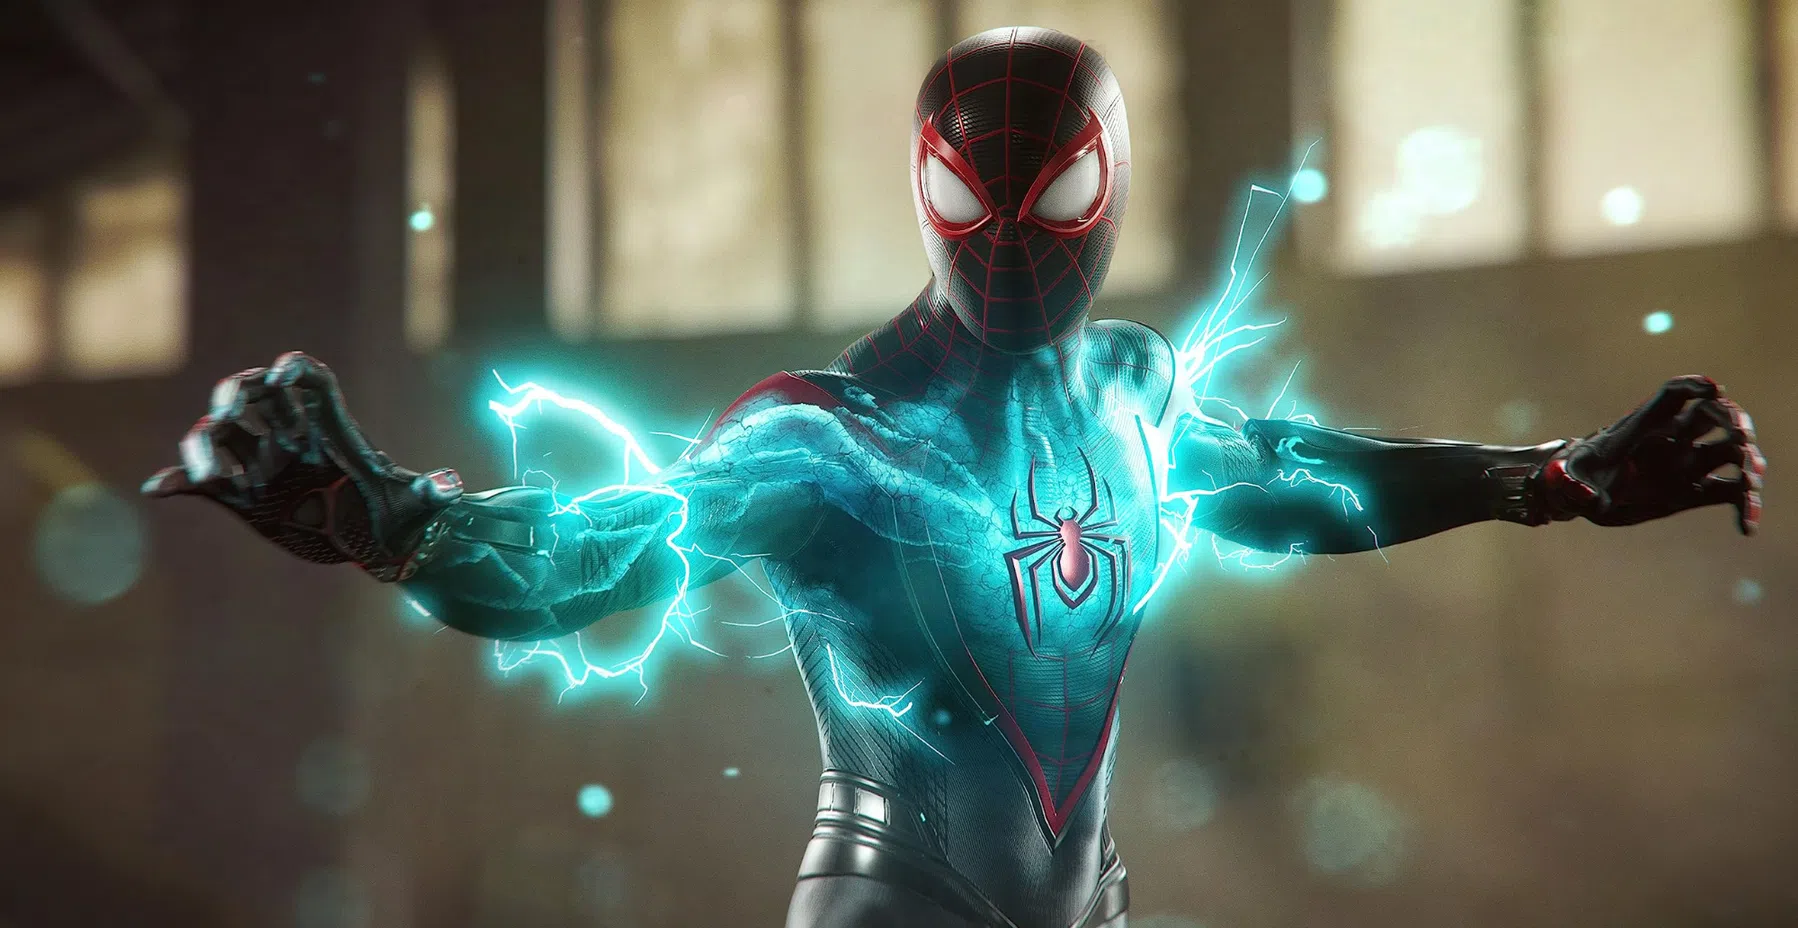 PS5 nu 46,6 miljoen keer verkocht, ook Spider-Man 2 blijft heel populair